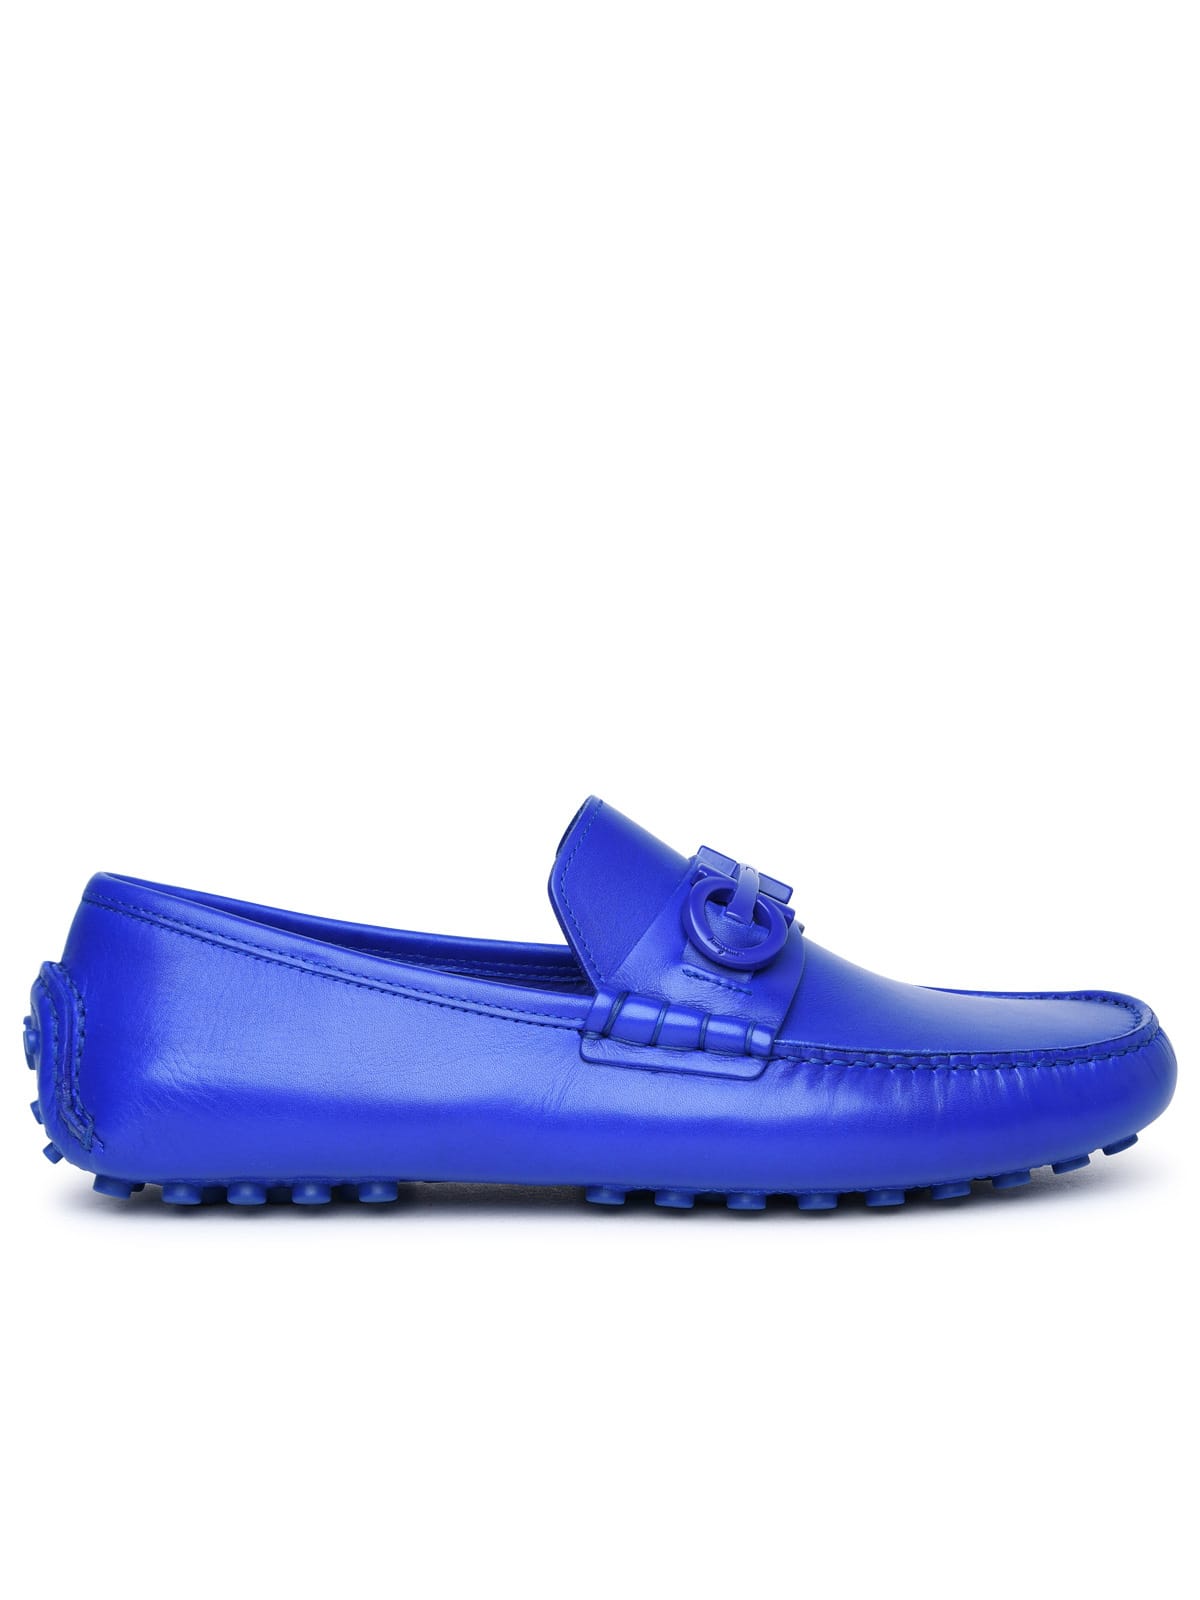 grazioso Blue Leather Loafers